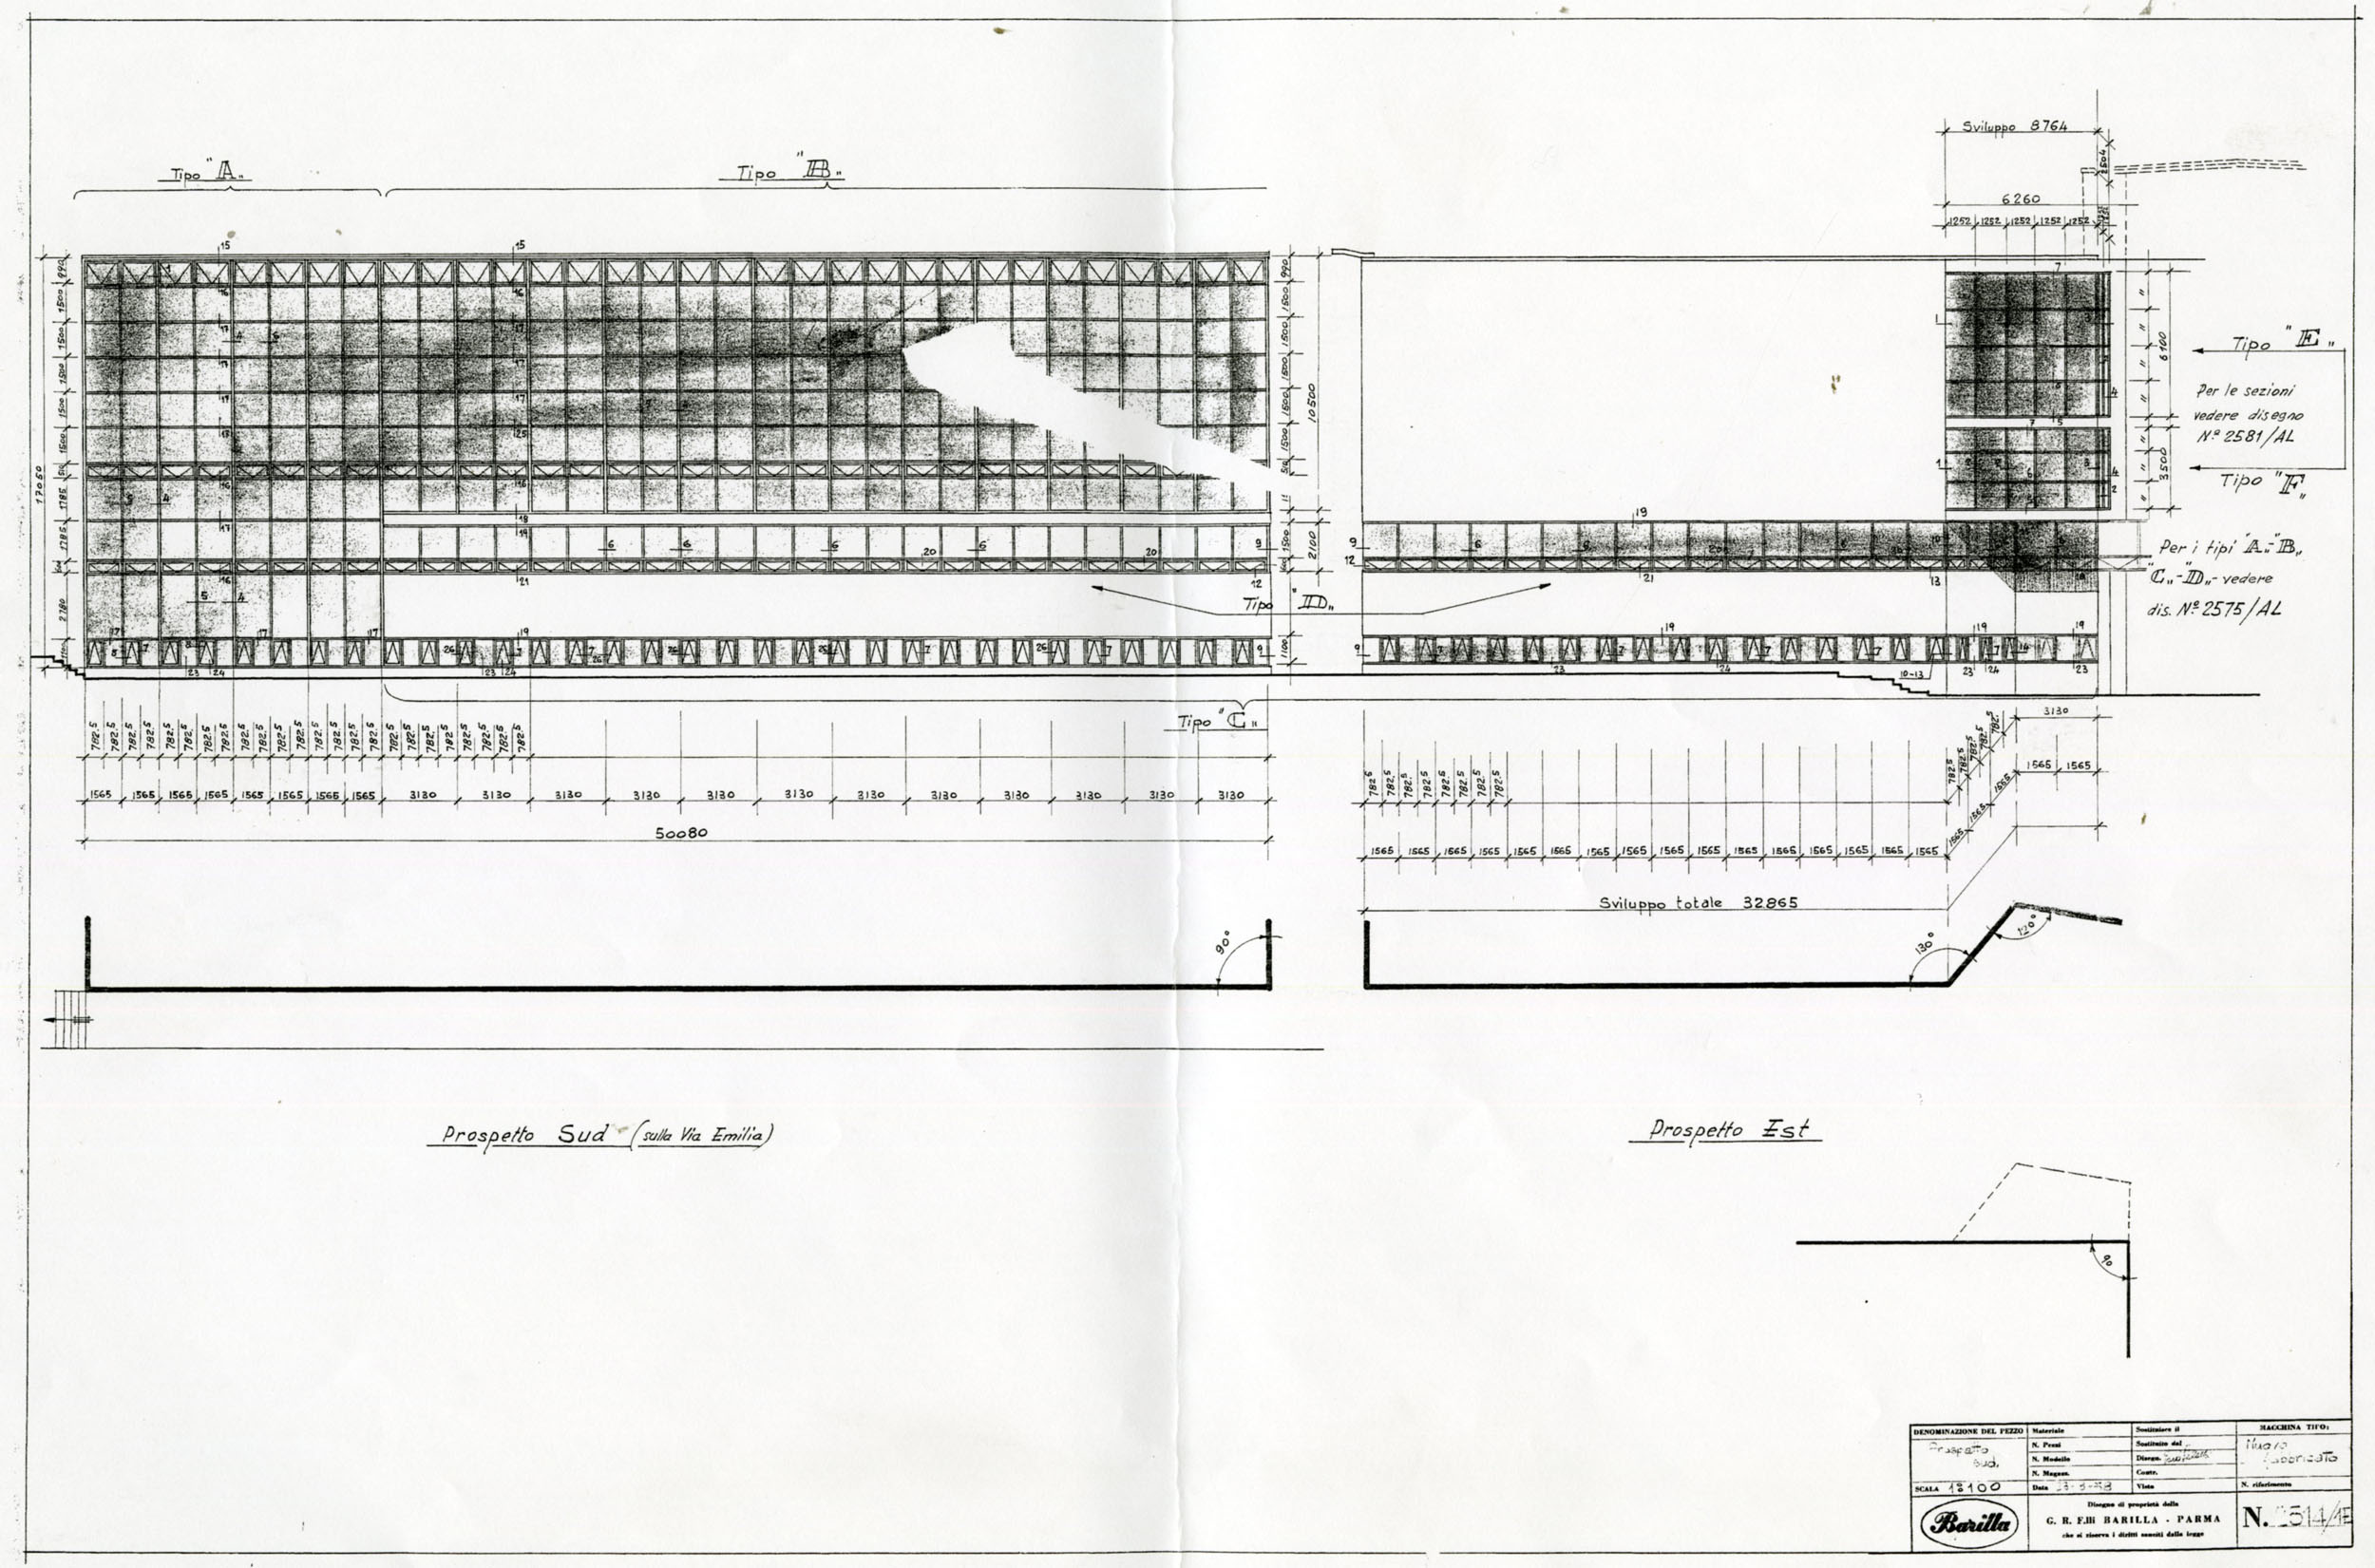 Ufficio tecnico Barilla, partizione dei serramenti delle facciate sud ed est, 1959 [ASB, O, Stabilimenti].